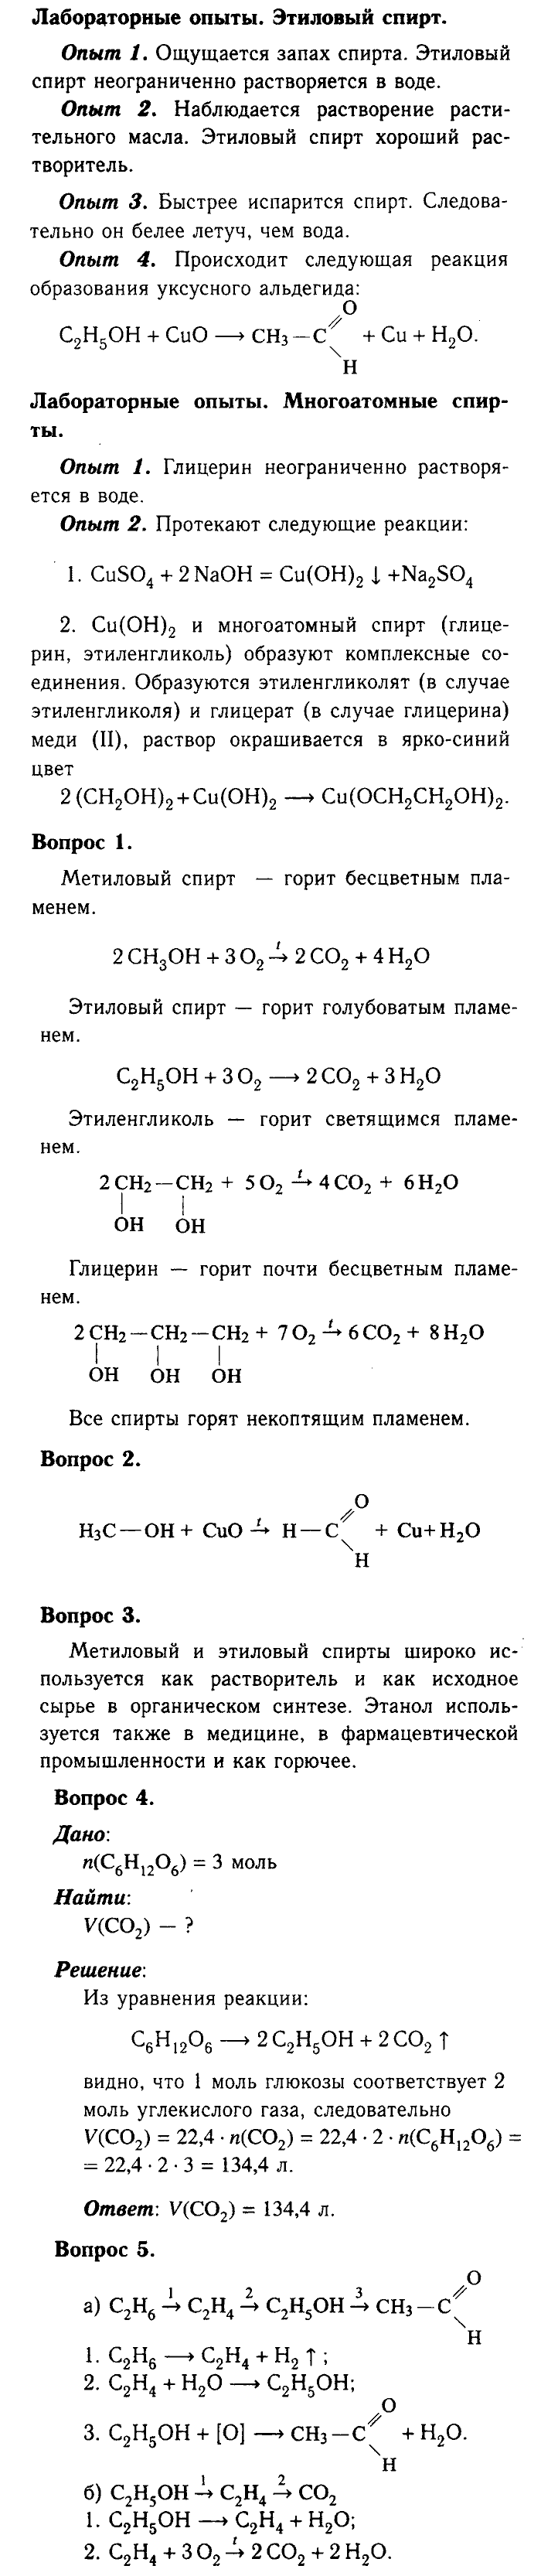 Химия, 9 класс, Габриелян, Лысова, 2002-2012, Параграф 35  (Глава пятая. Органическая химия. § 35. Спирты) Задача: лабораторная